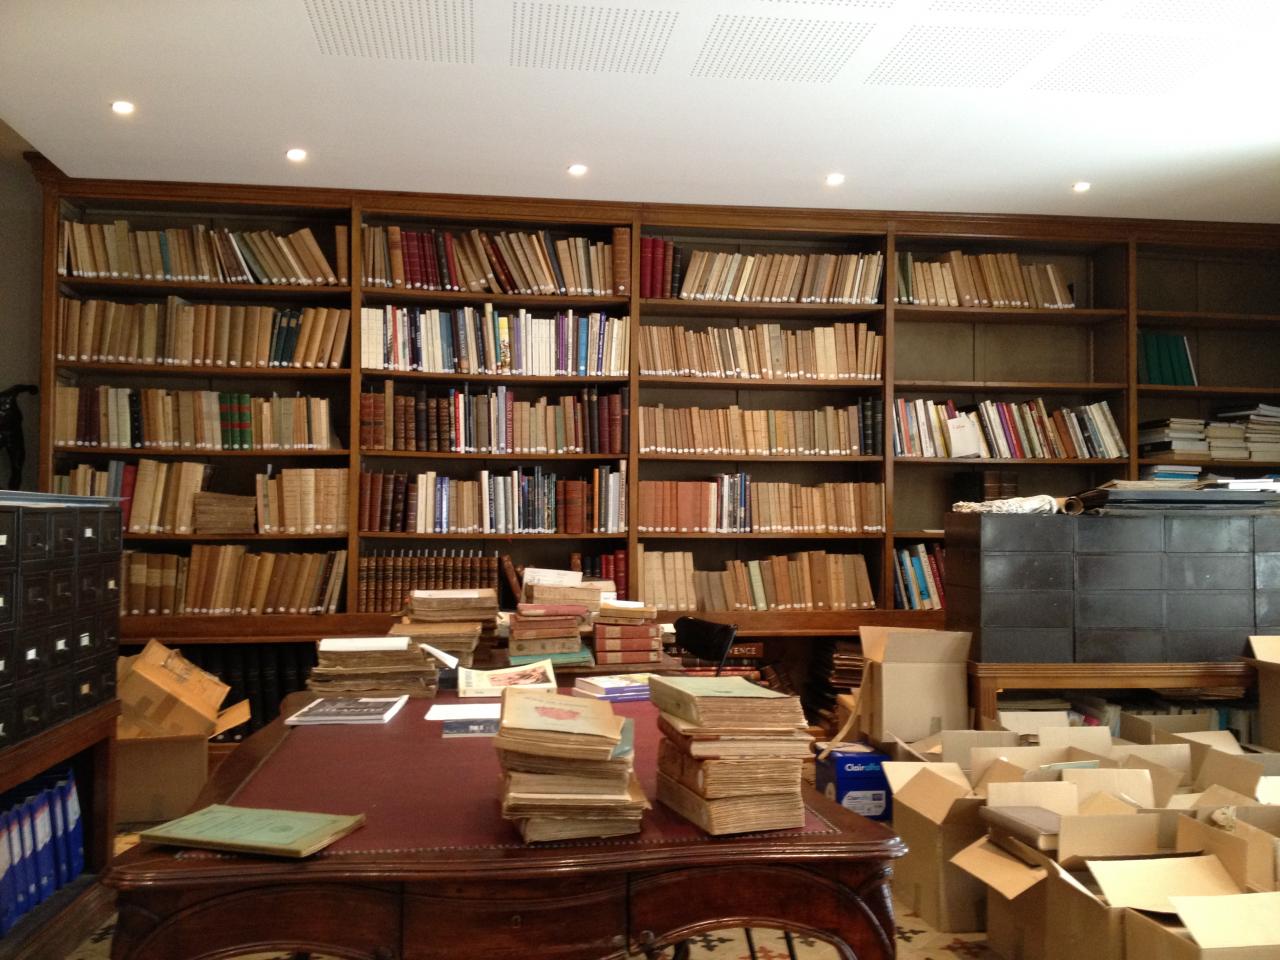 La bibliothèque et ses cartons pleins de livres...